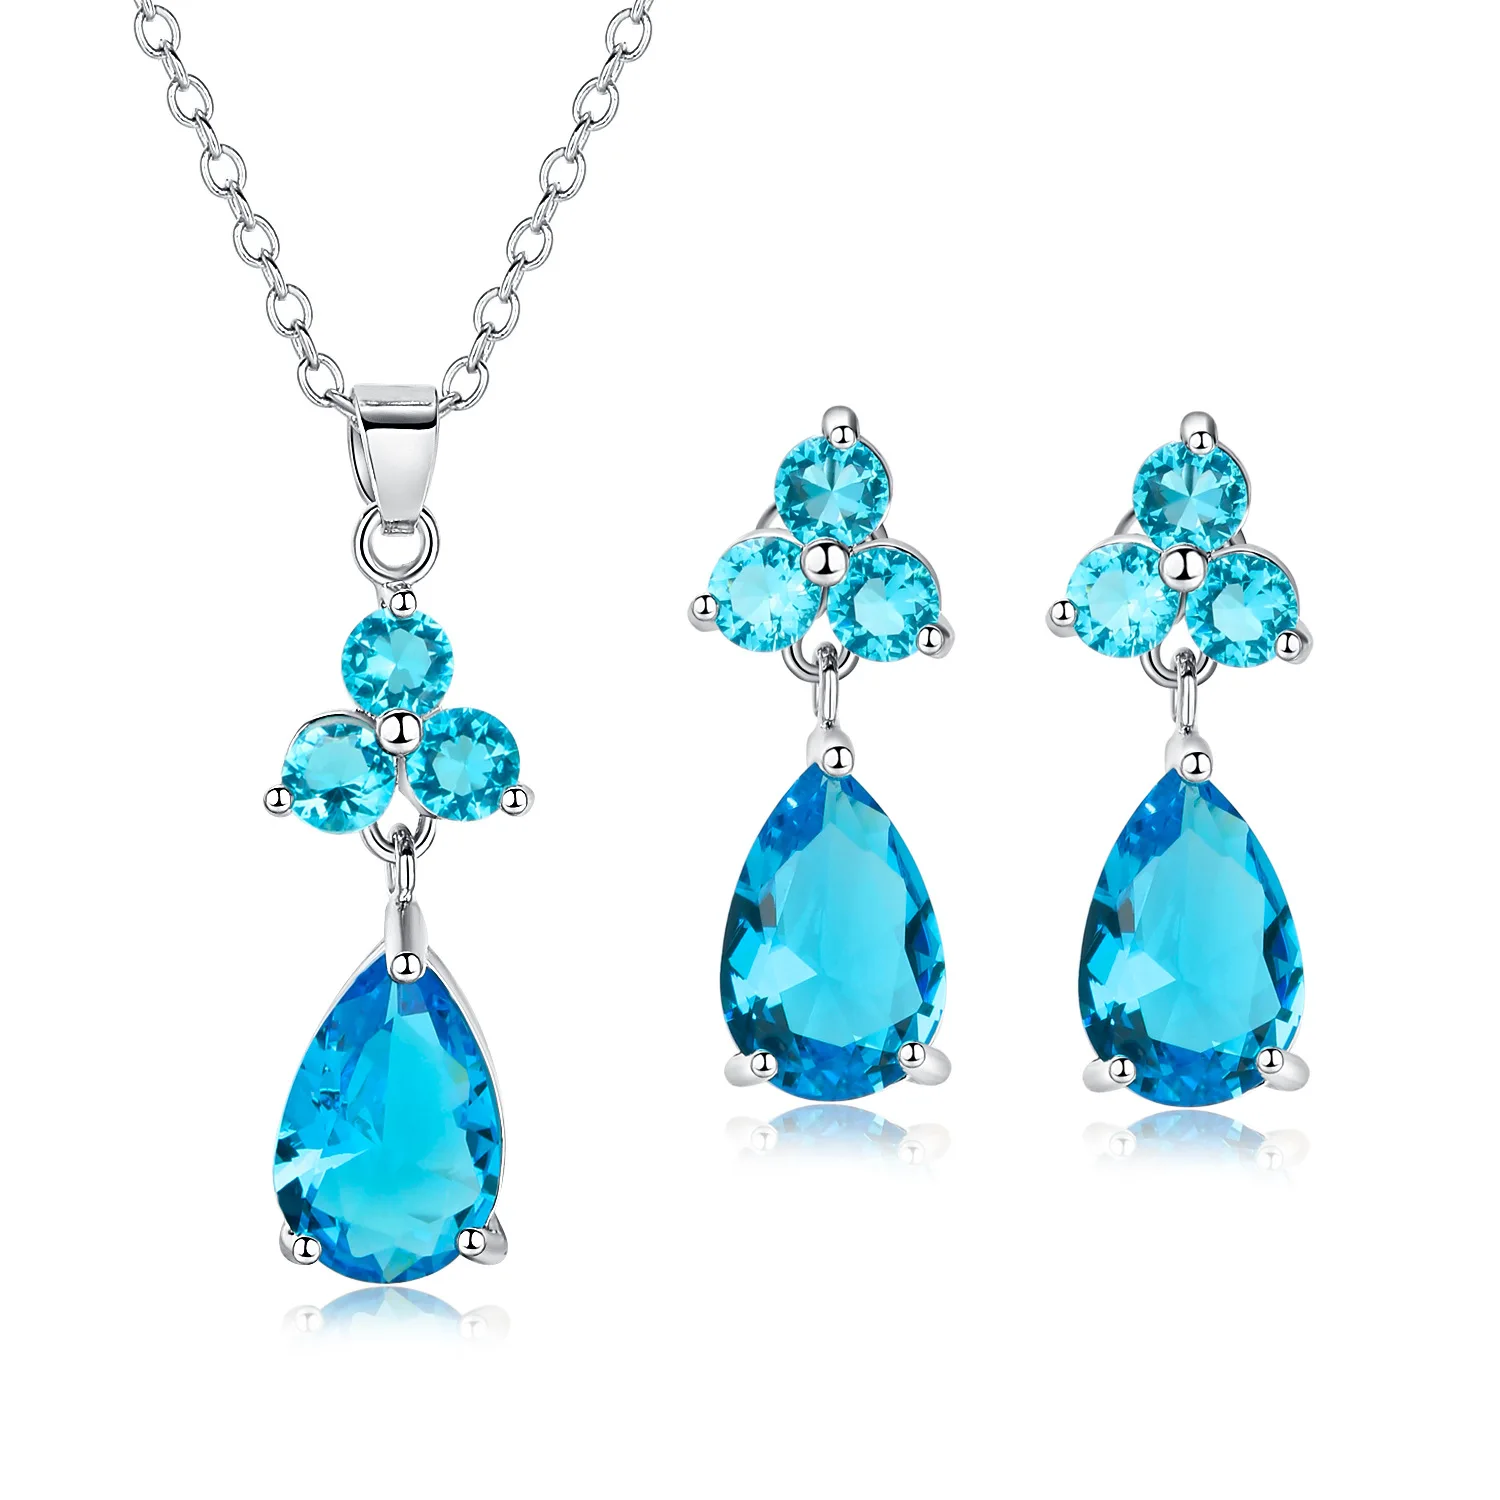 

TSHOU233 Blue water drop flower zircon jewelry set parTSHOU copper blue crystal necklace pendant earrings set Gift Link